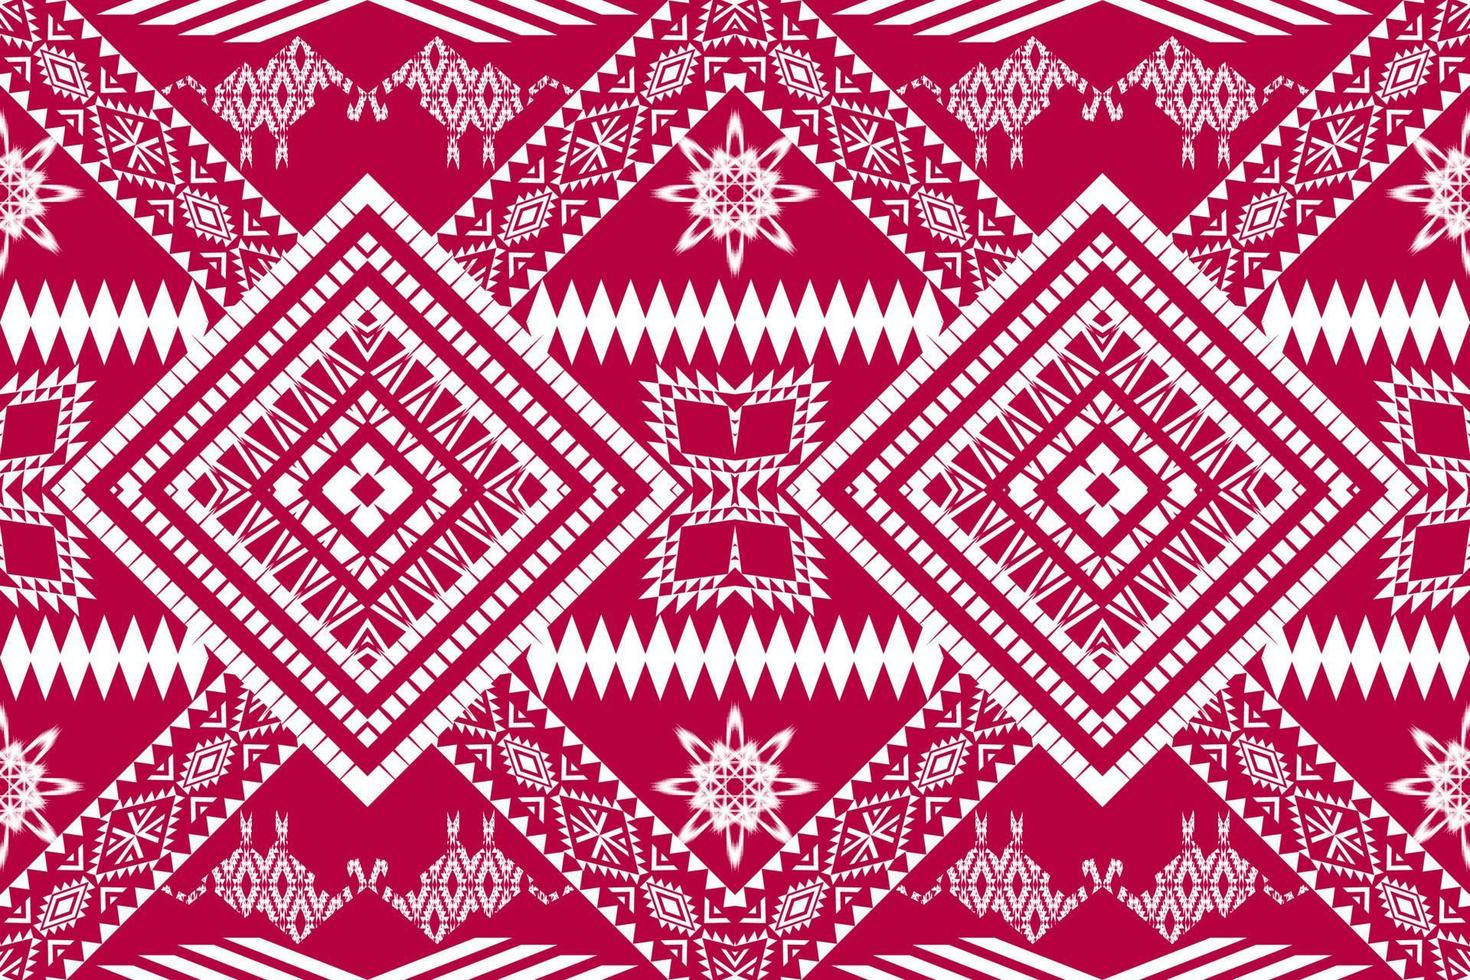 patrón tradicional oriental étnico geométrico.figura estilo de bordado tribal.diseño para papel tapiz,ropa,envoltura,tela,ilustración vectorial vector